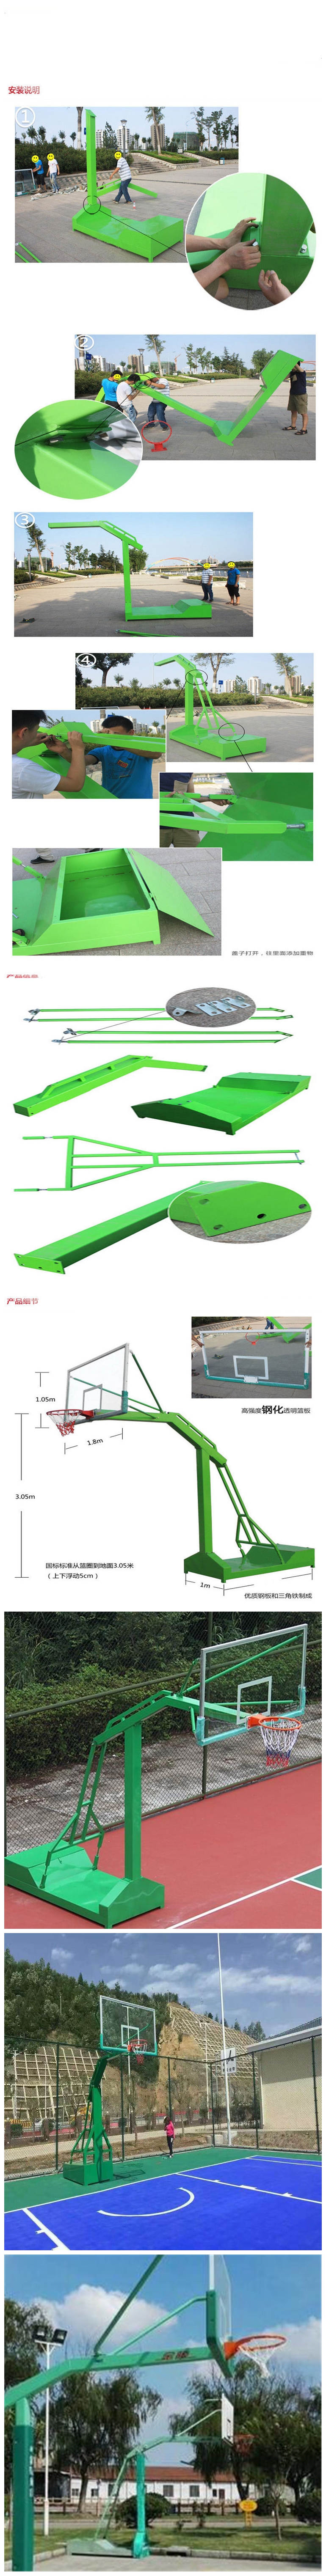 标准尺寸篮球架高度 厂家供应凹凸篮球架 篮球架生产厂家 宏进